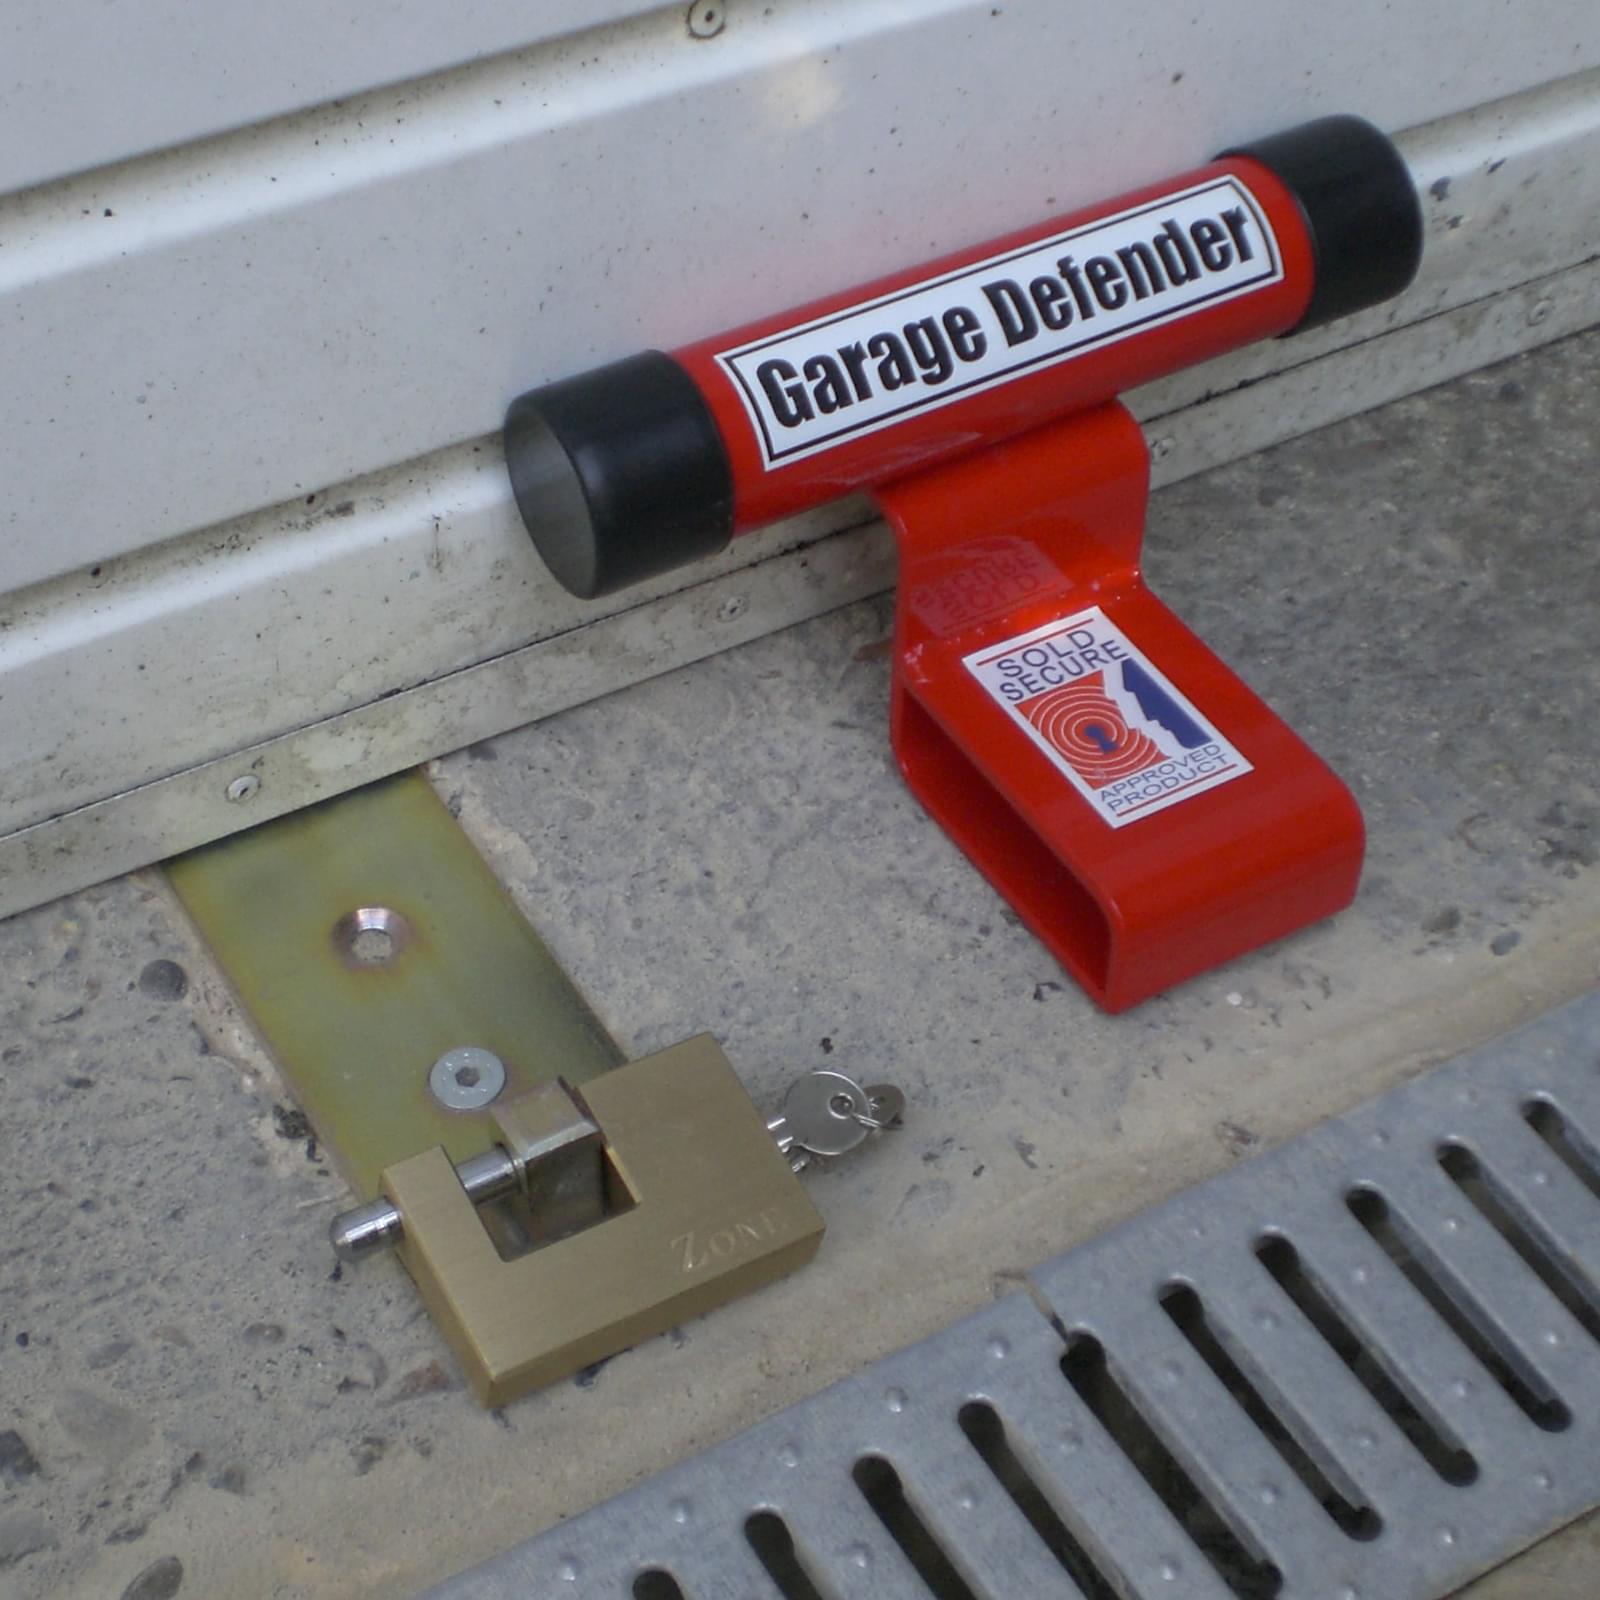 How To Lock A Garage Door